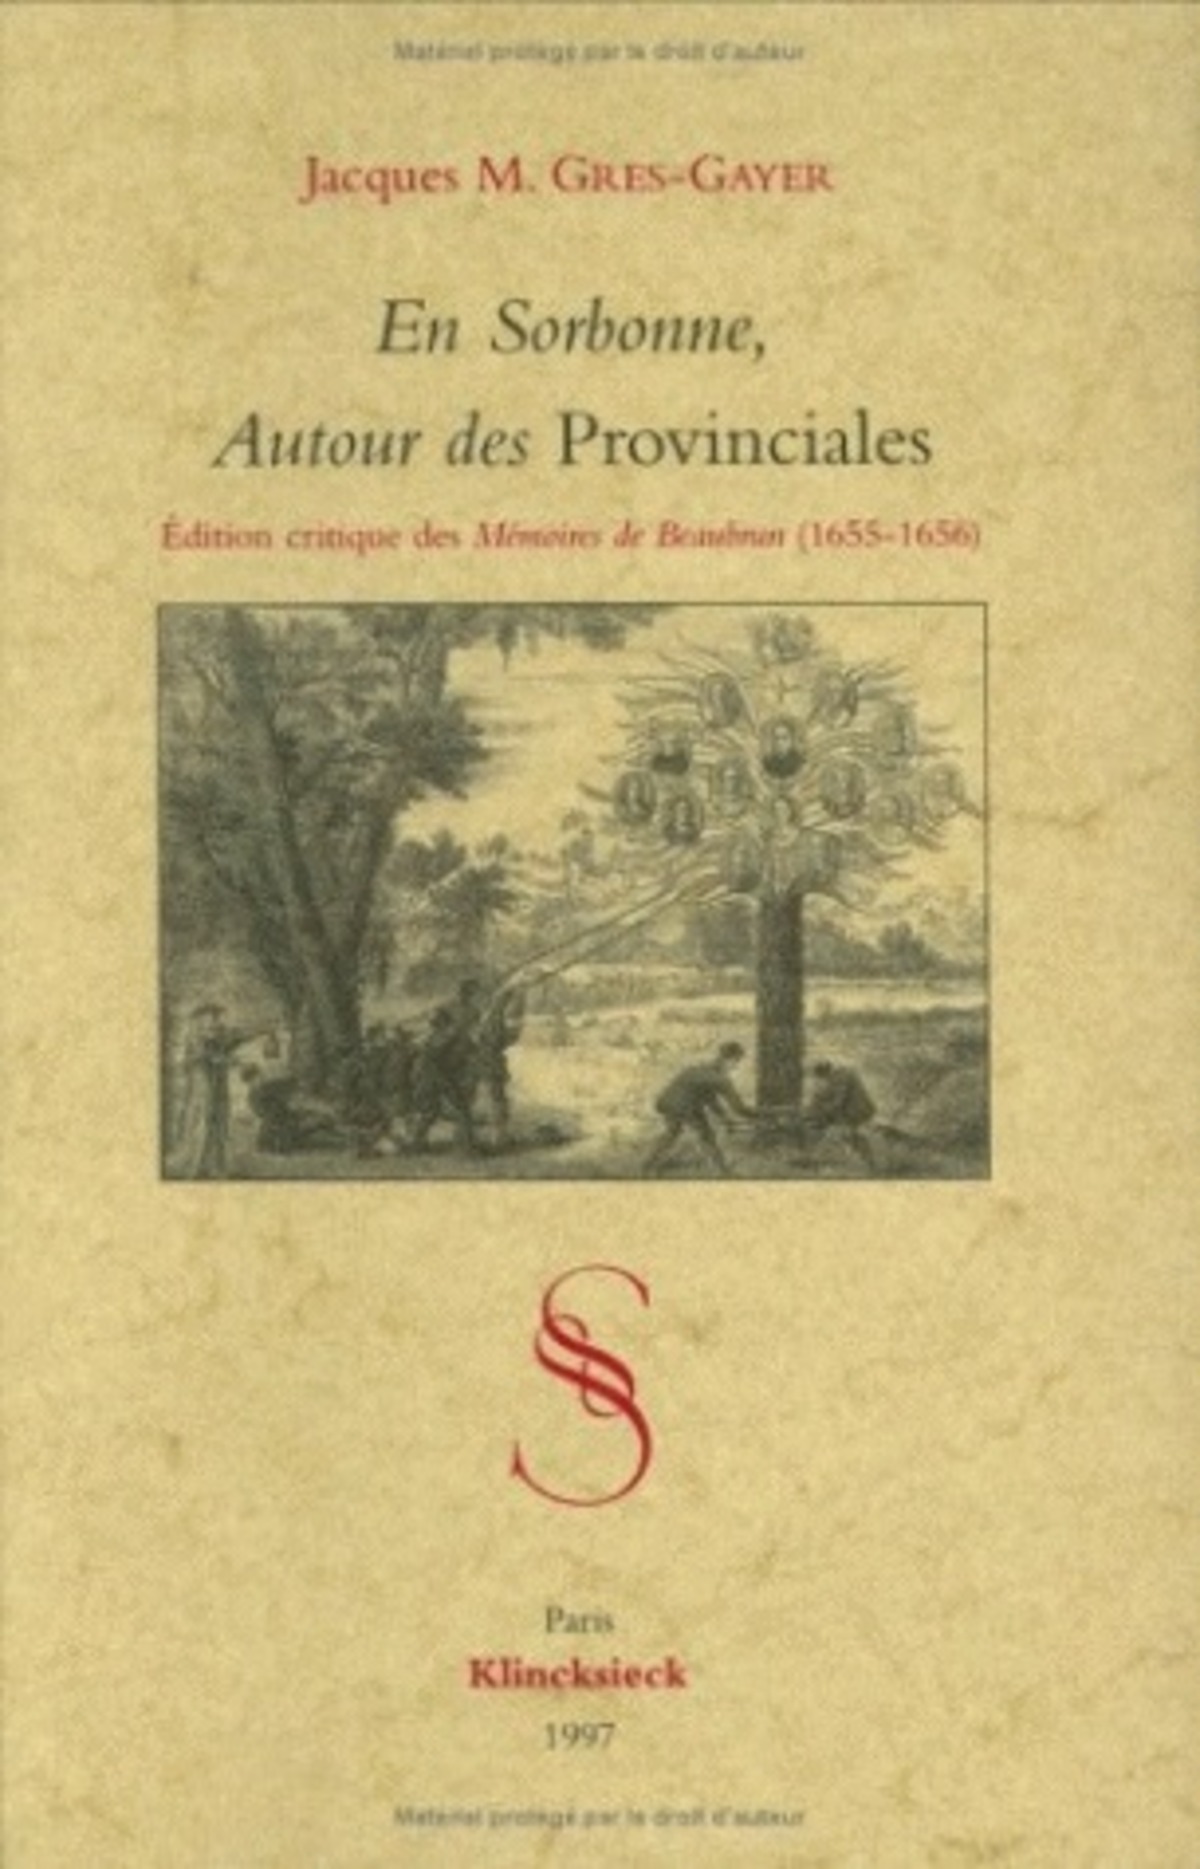 En Sorbonne, Autour des Provinciales